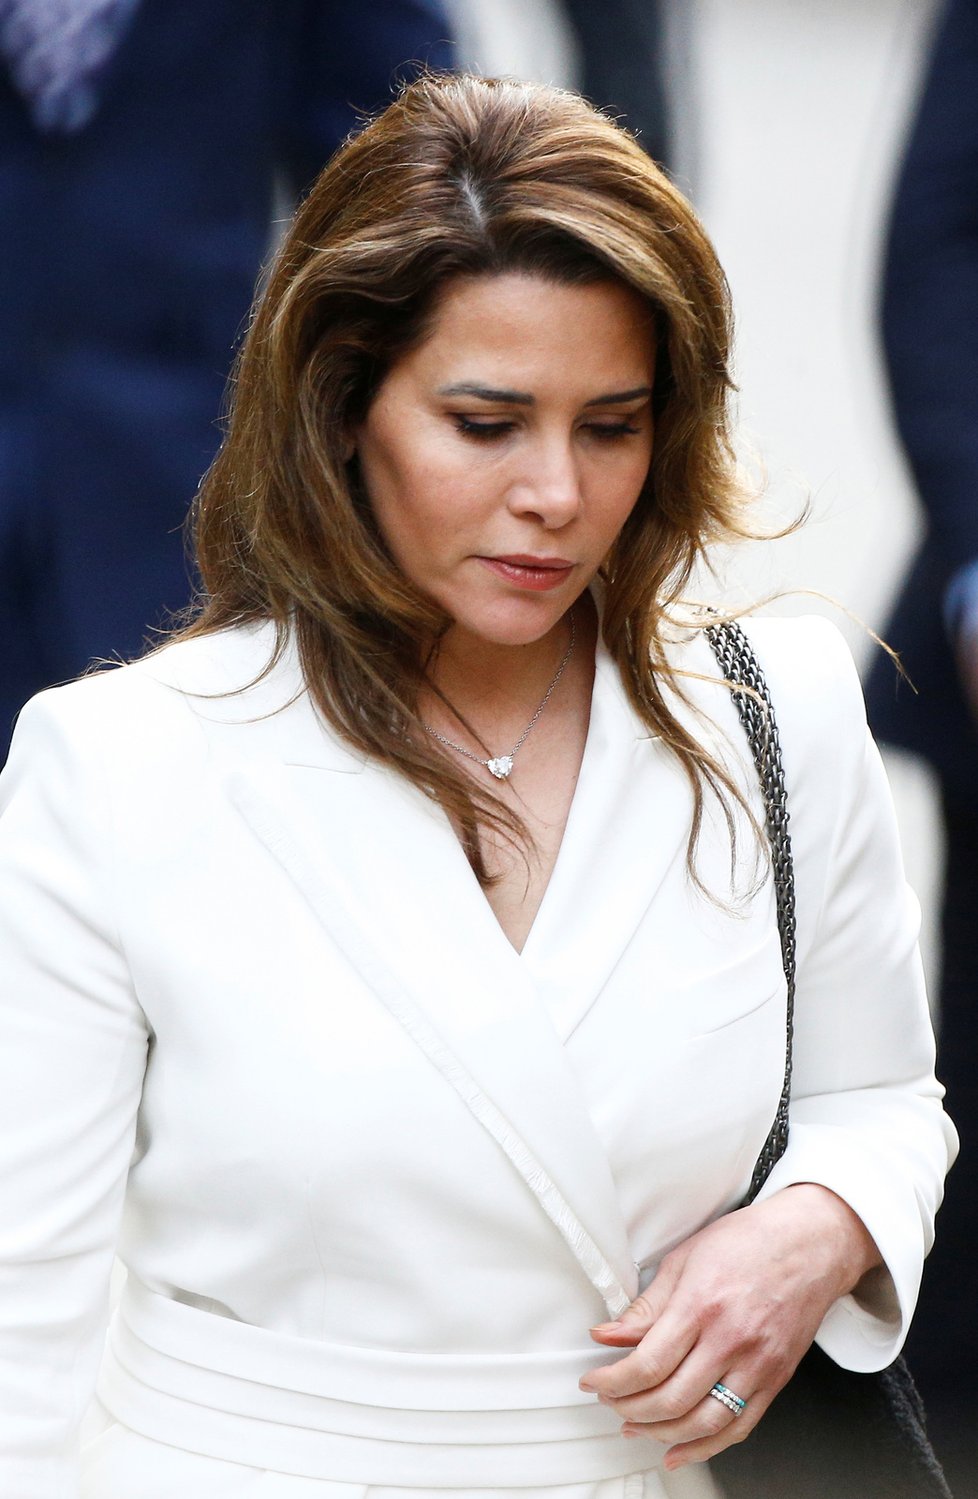 Jordánská princezna Hajá bint al-Husajn u Odvolacího soudu v Londýně, (26. 2. 2020).